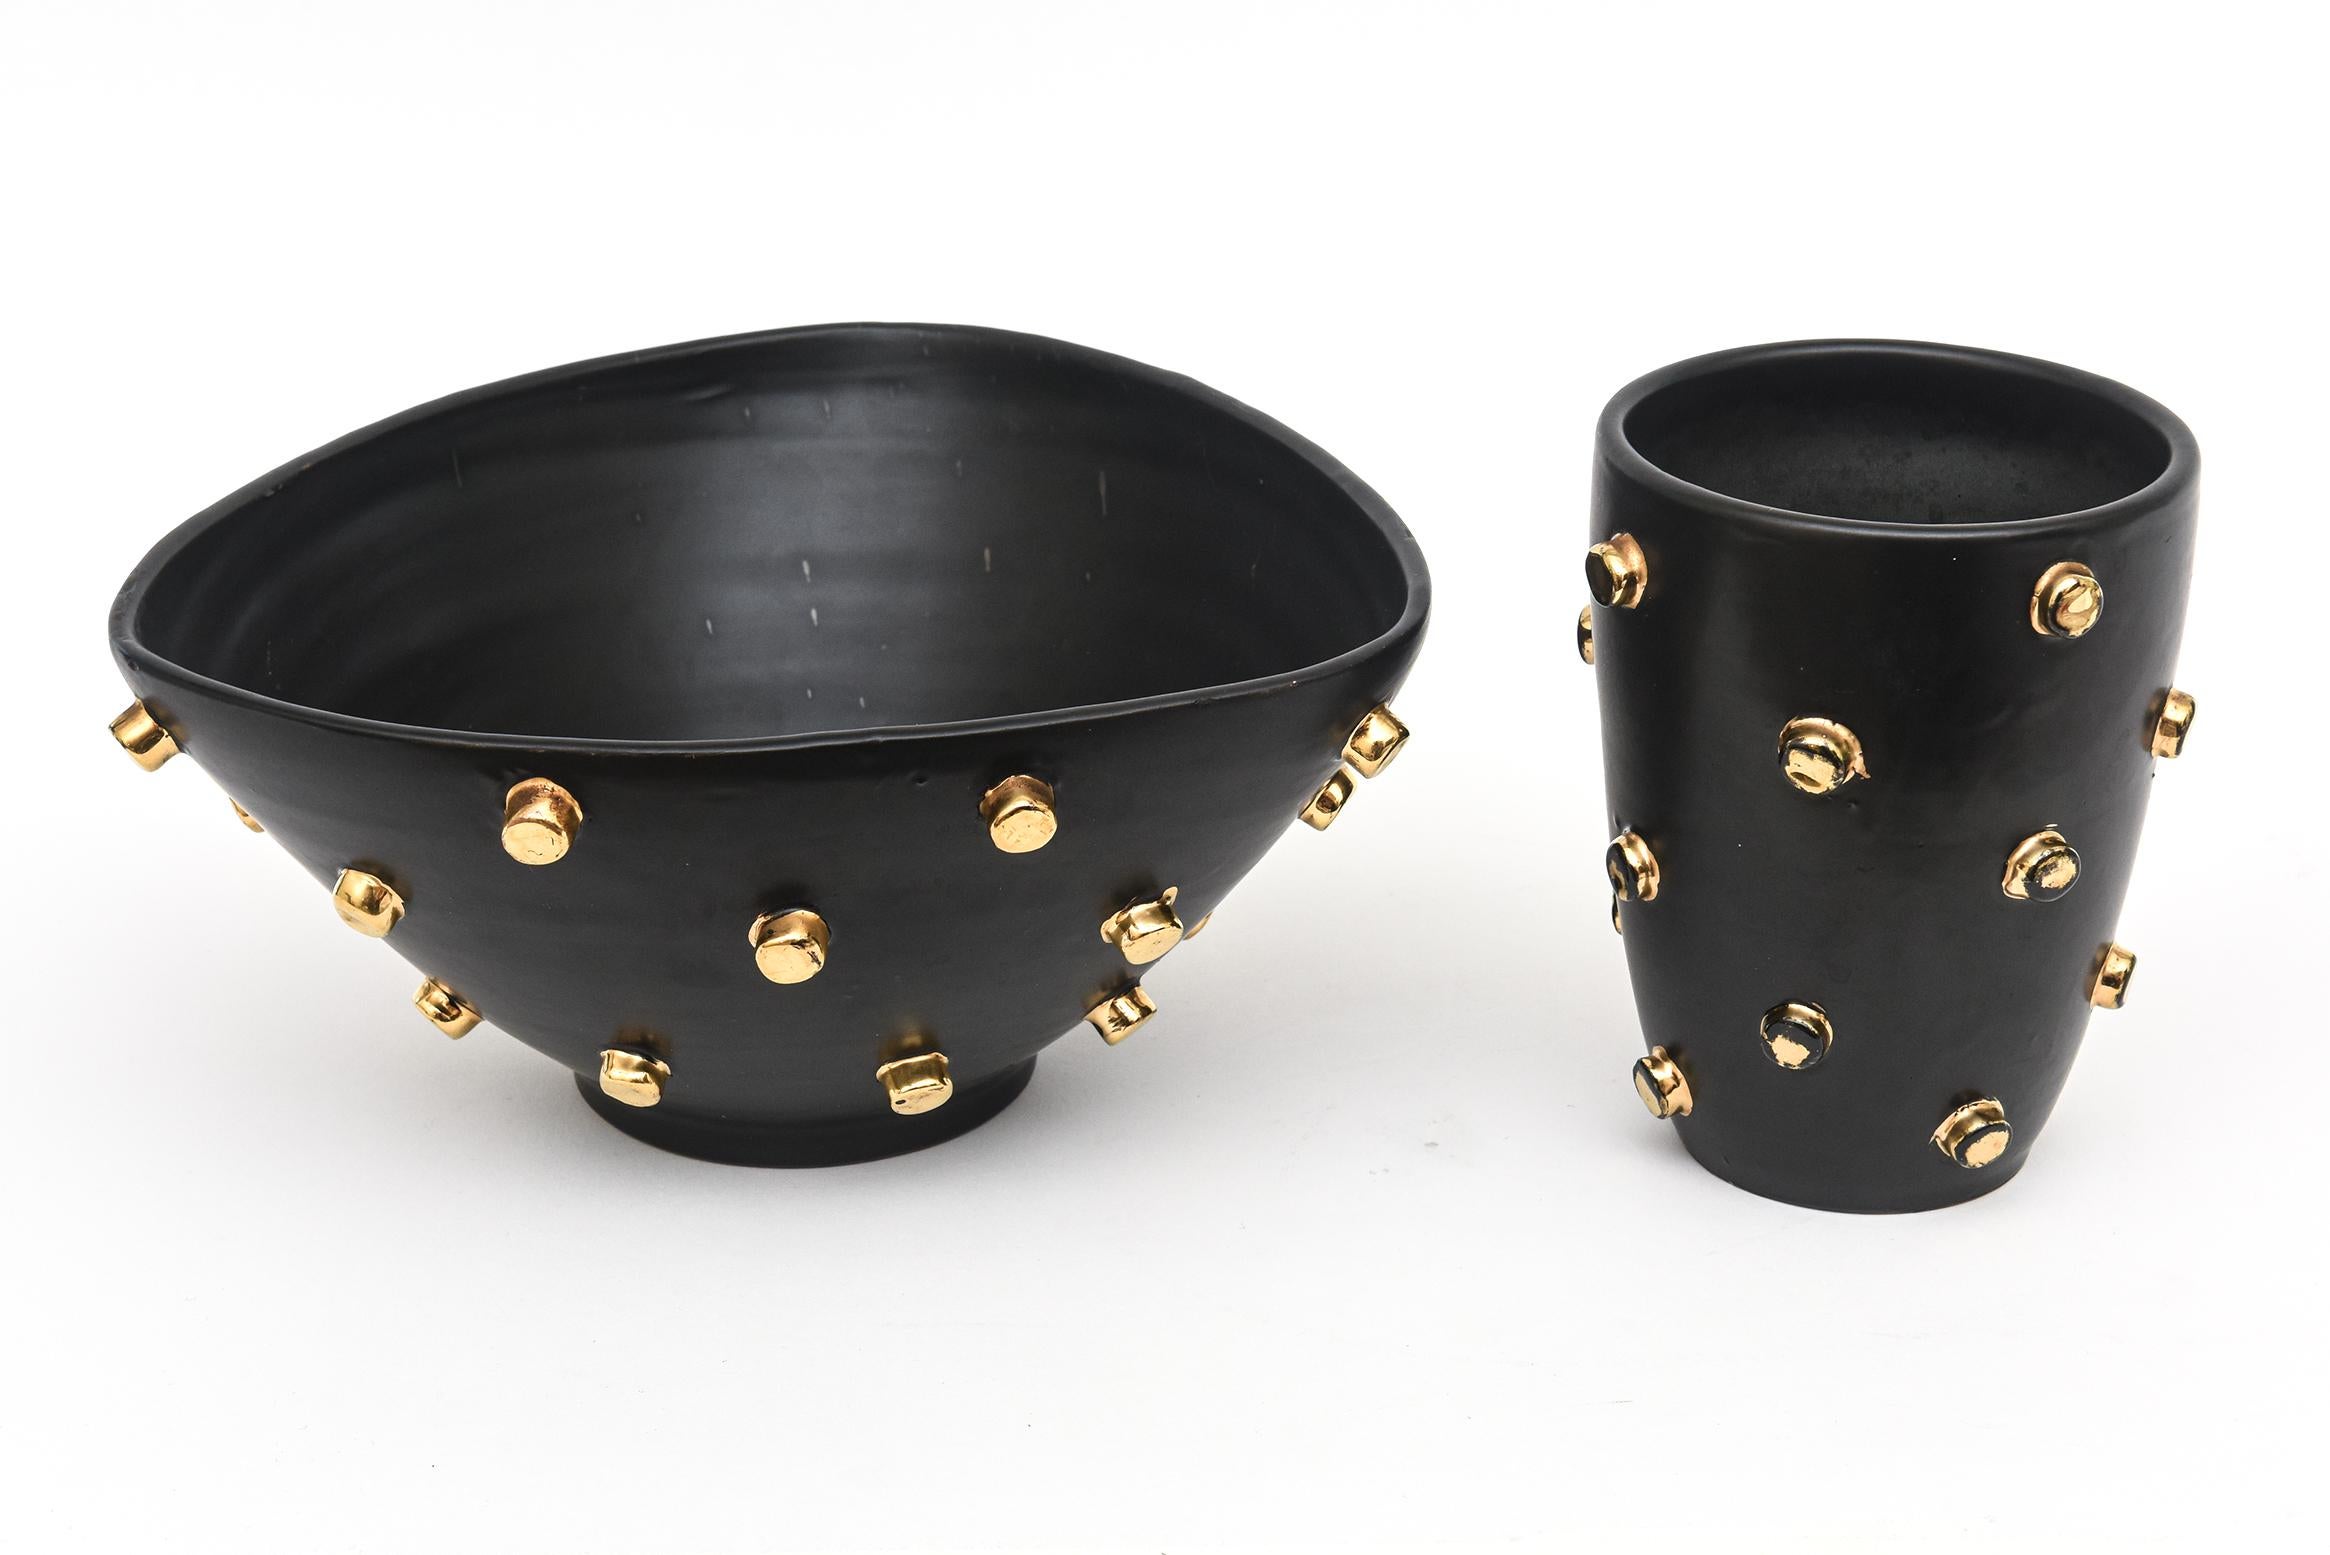 Alvino Bagni für Bitossi entwarf dieses Paar hervorragender, seltener schwarzer italienischer Vintage-Keramik in den 60er Jahren für Good Friends, einen amerikanischen Importeur, der Bitossi häufig mit der Herstellung ungewöhnlicher Stücke